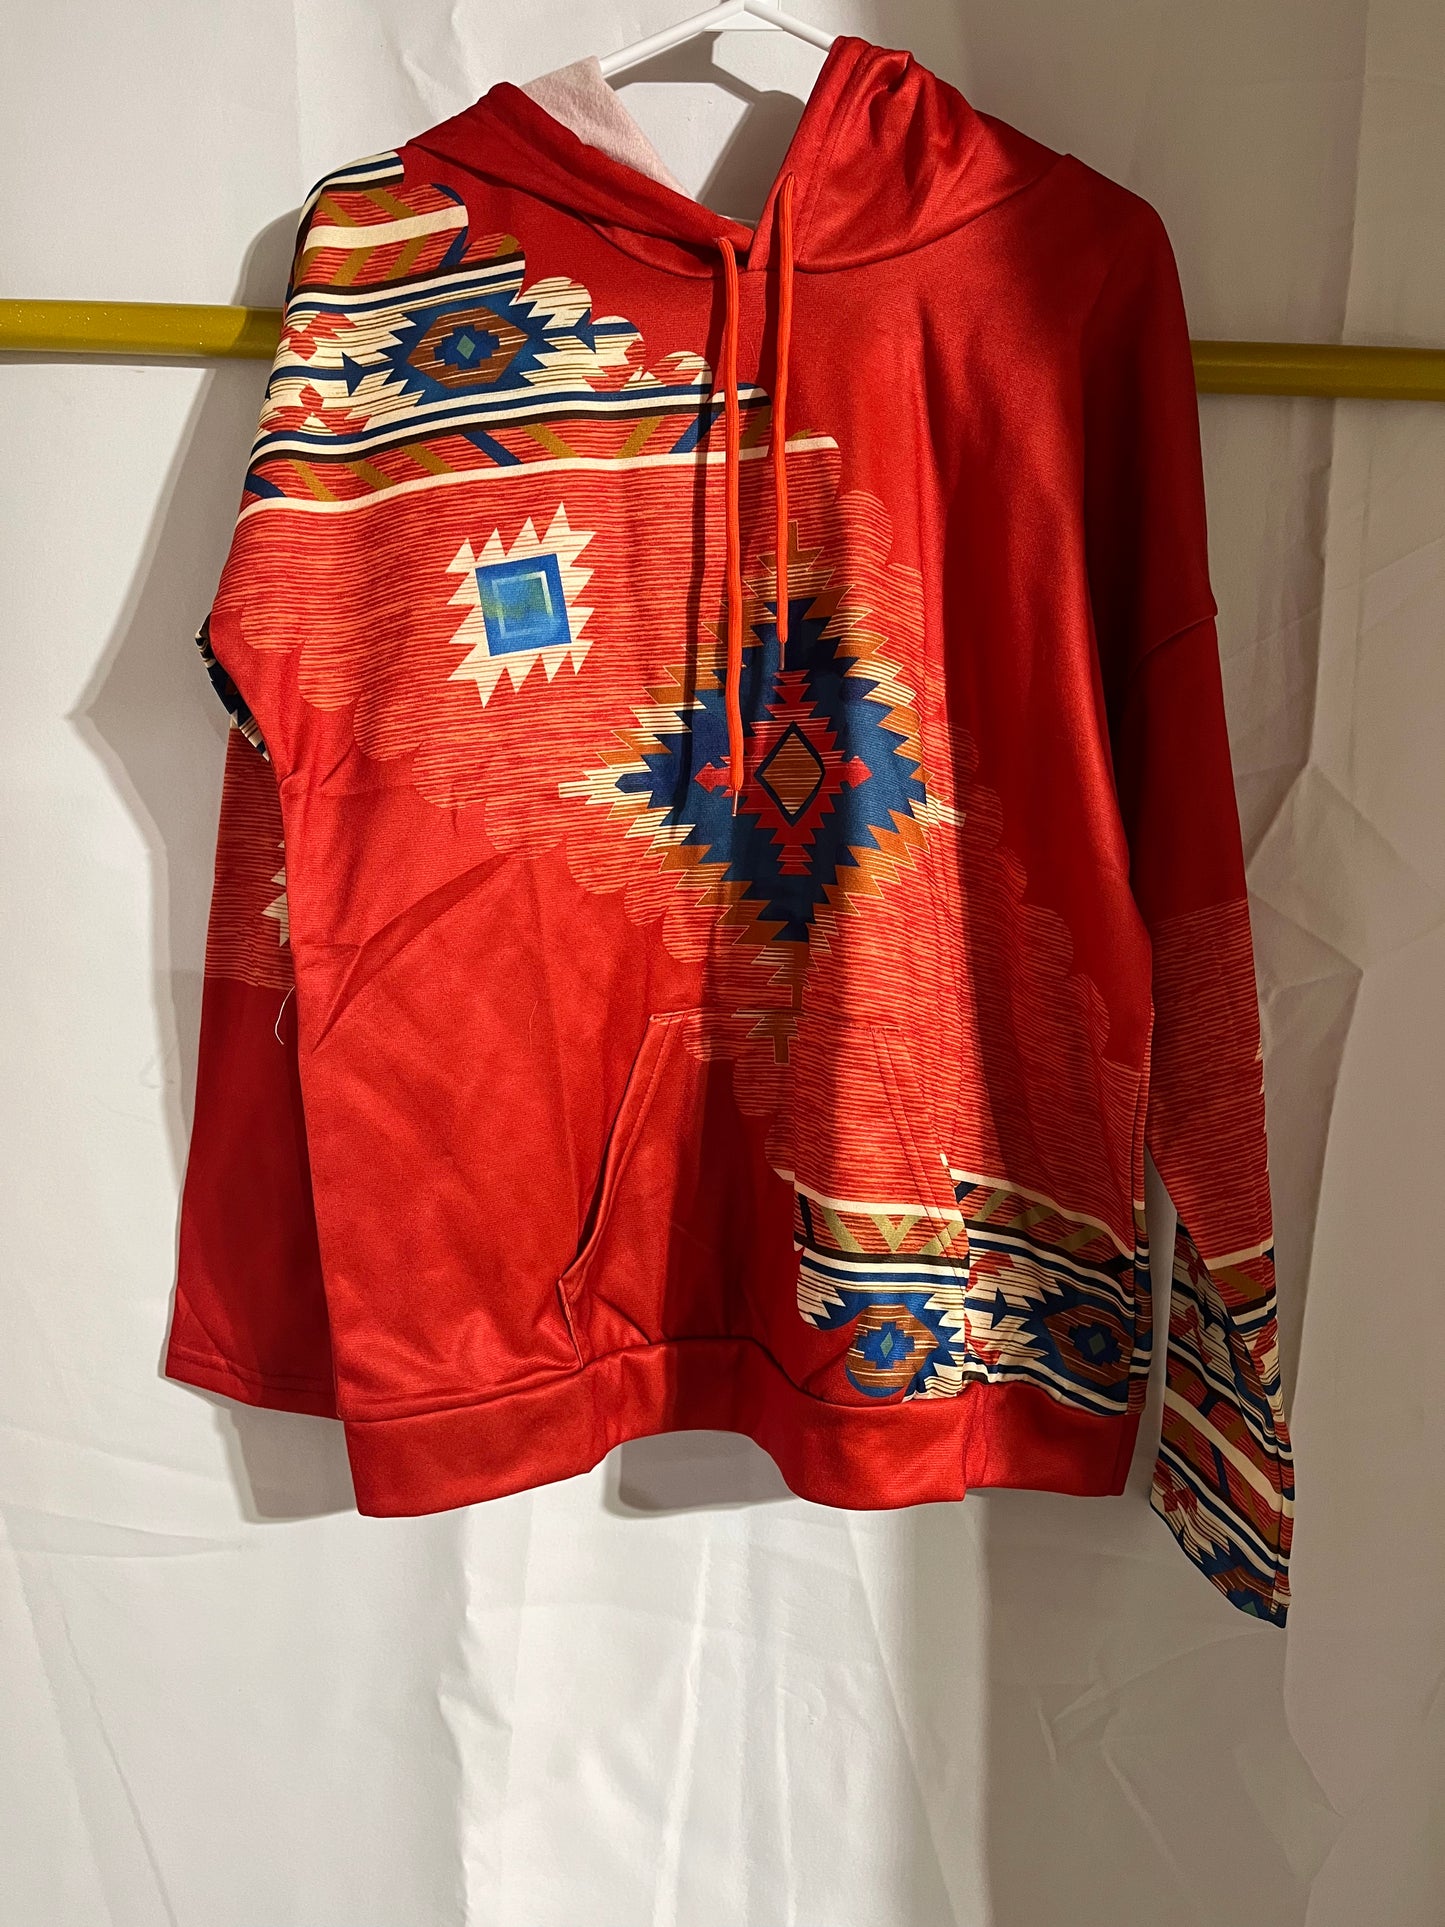 Aztec hoodies